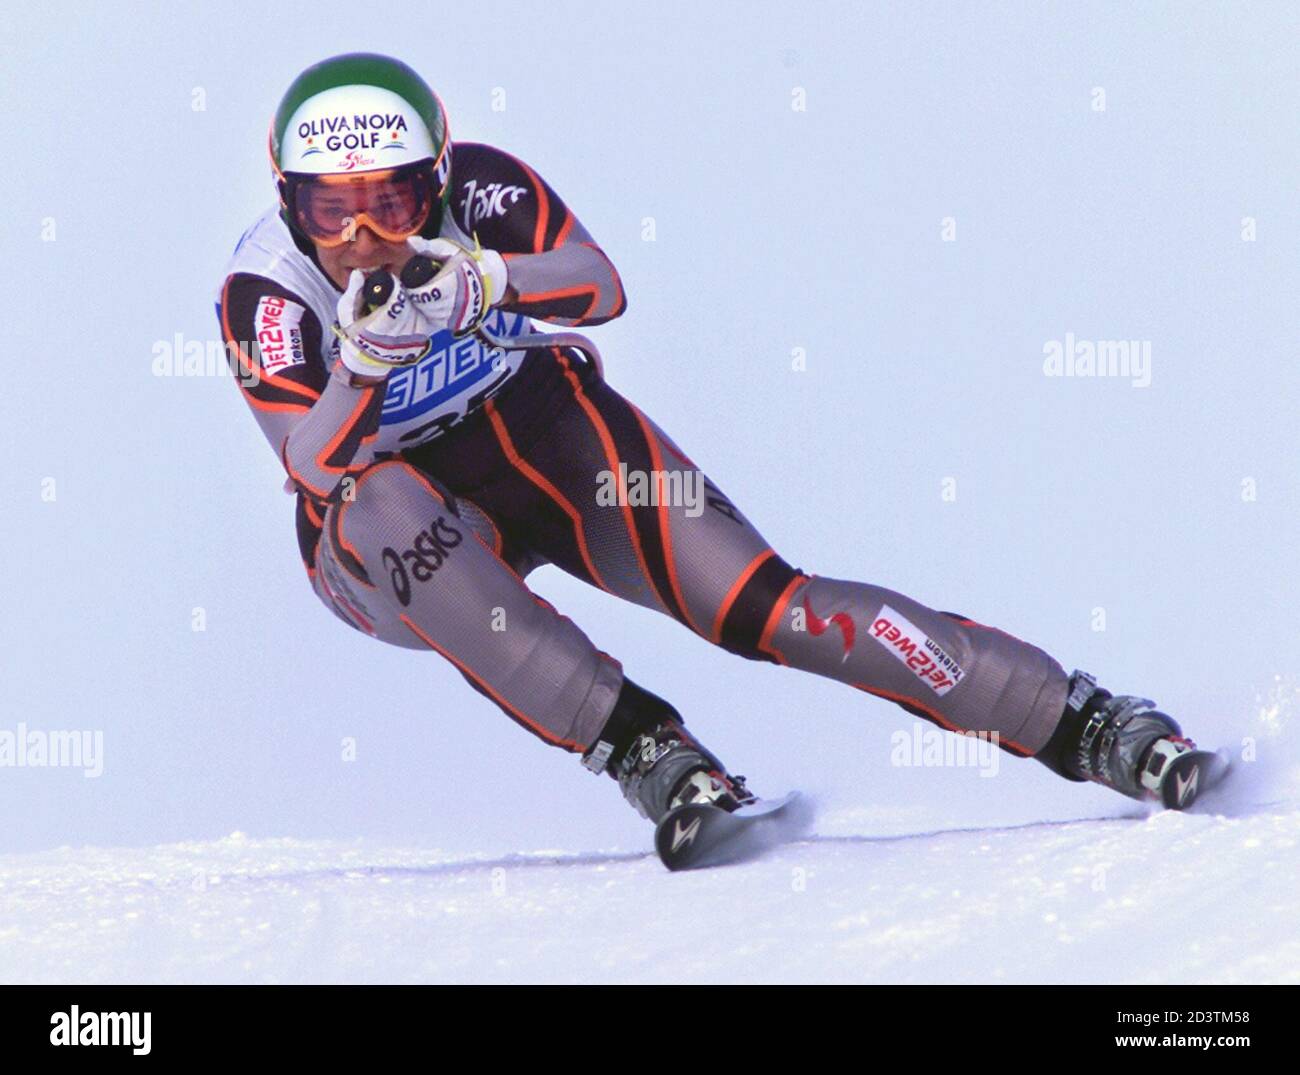 Österreichs Michaela Dorfmeister Ski beim ersten Damen-Downhill-Rennen der  Saison am Lake Louise, 29. November 2001. Dorfmeister belegte den zweiten  Platz hinter der italienischen Isolde Kostner. REUTERS/Shaun Best SB/SV  Stockfotografie - Alamy